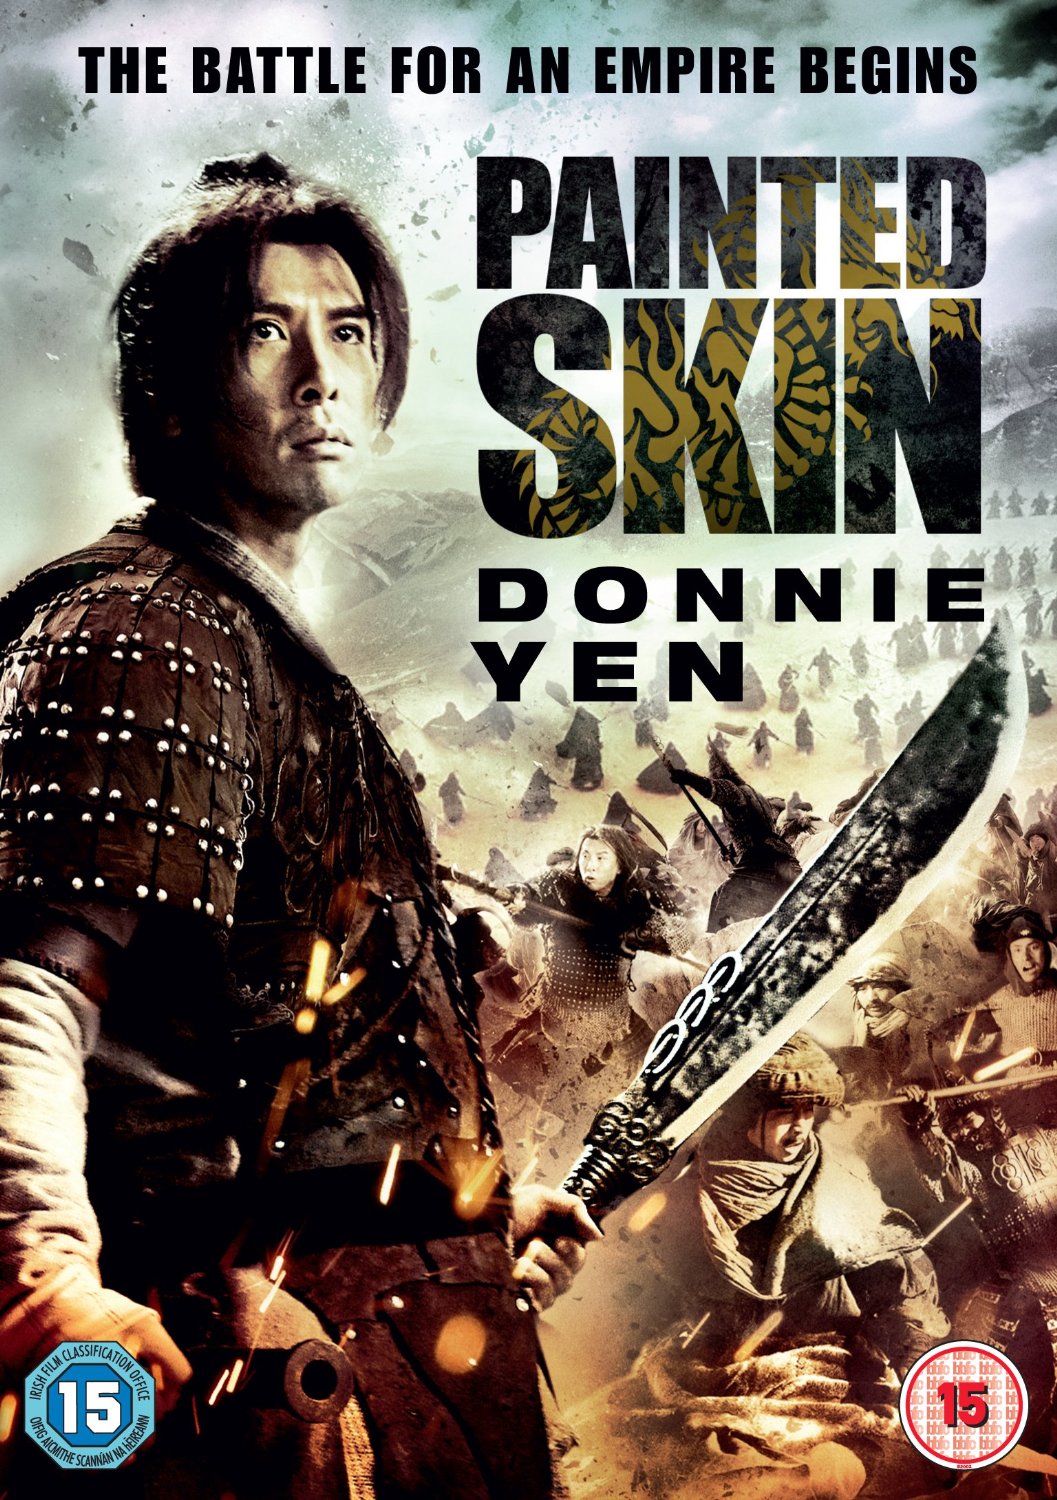 Painted Skin (2008) 720p ligera Donnie Yen VOSE MG/UPT